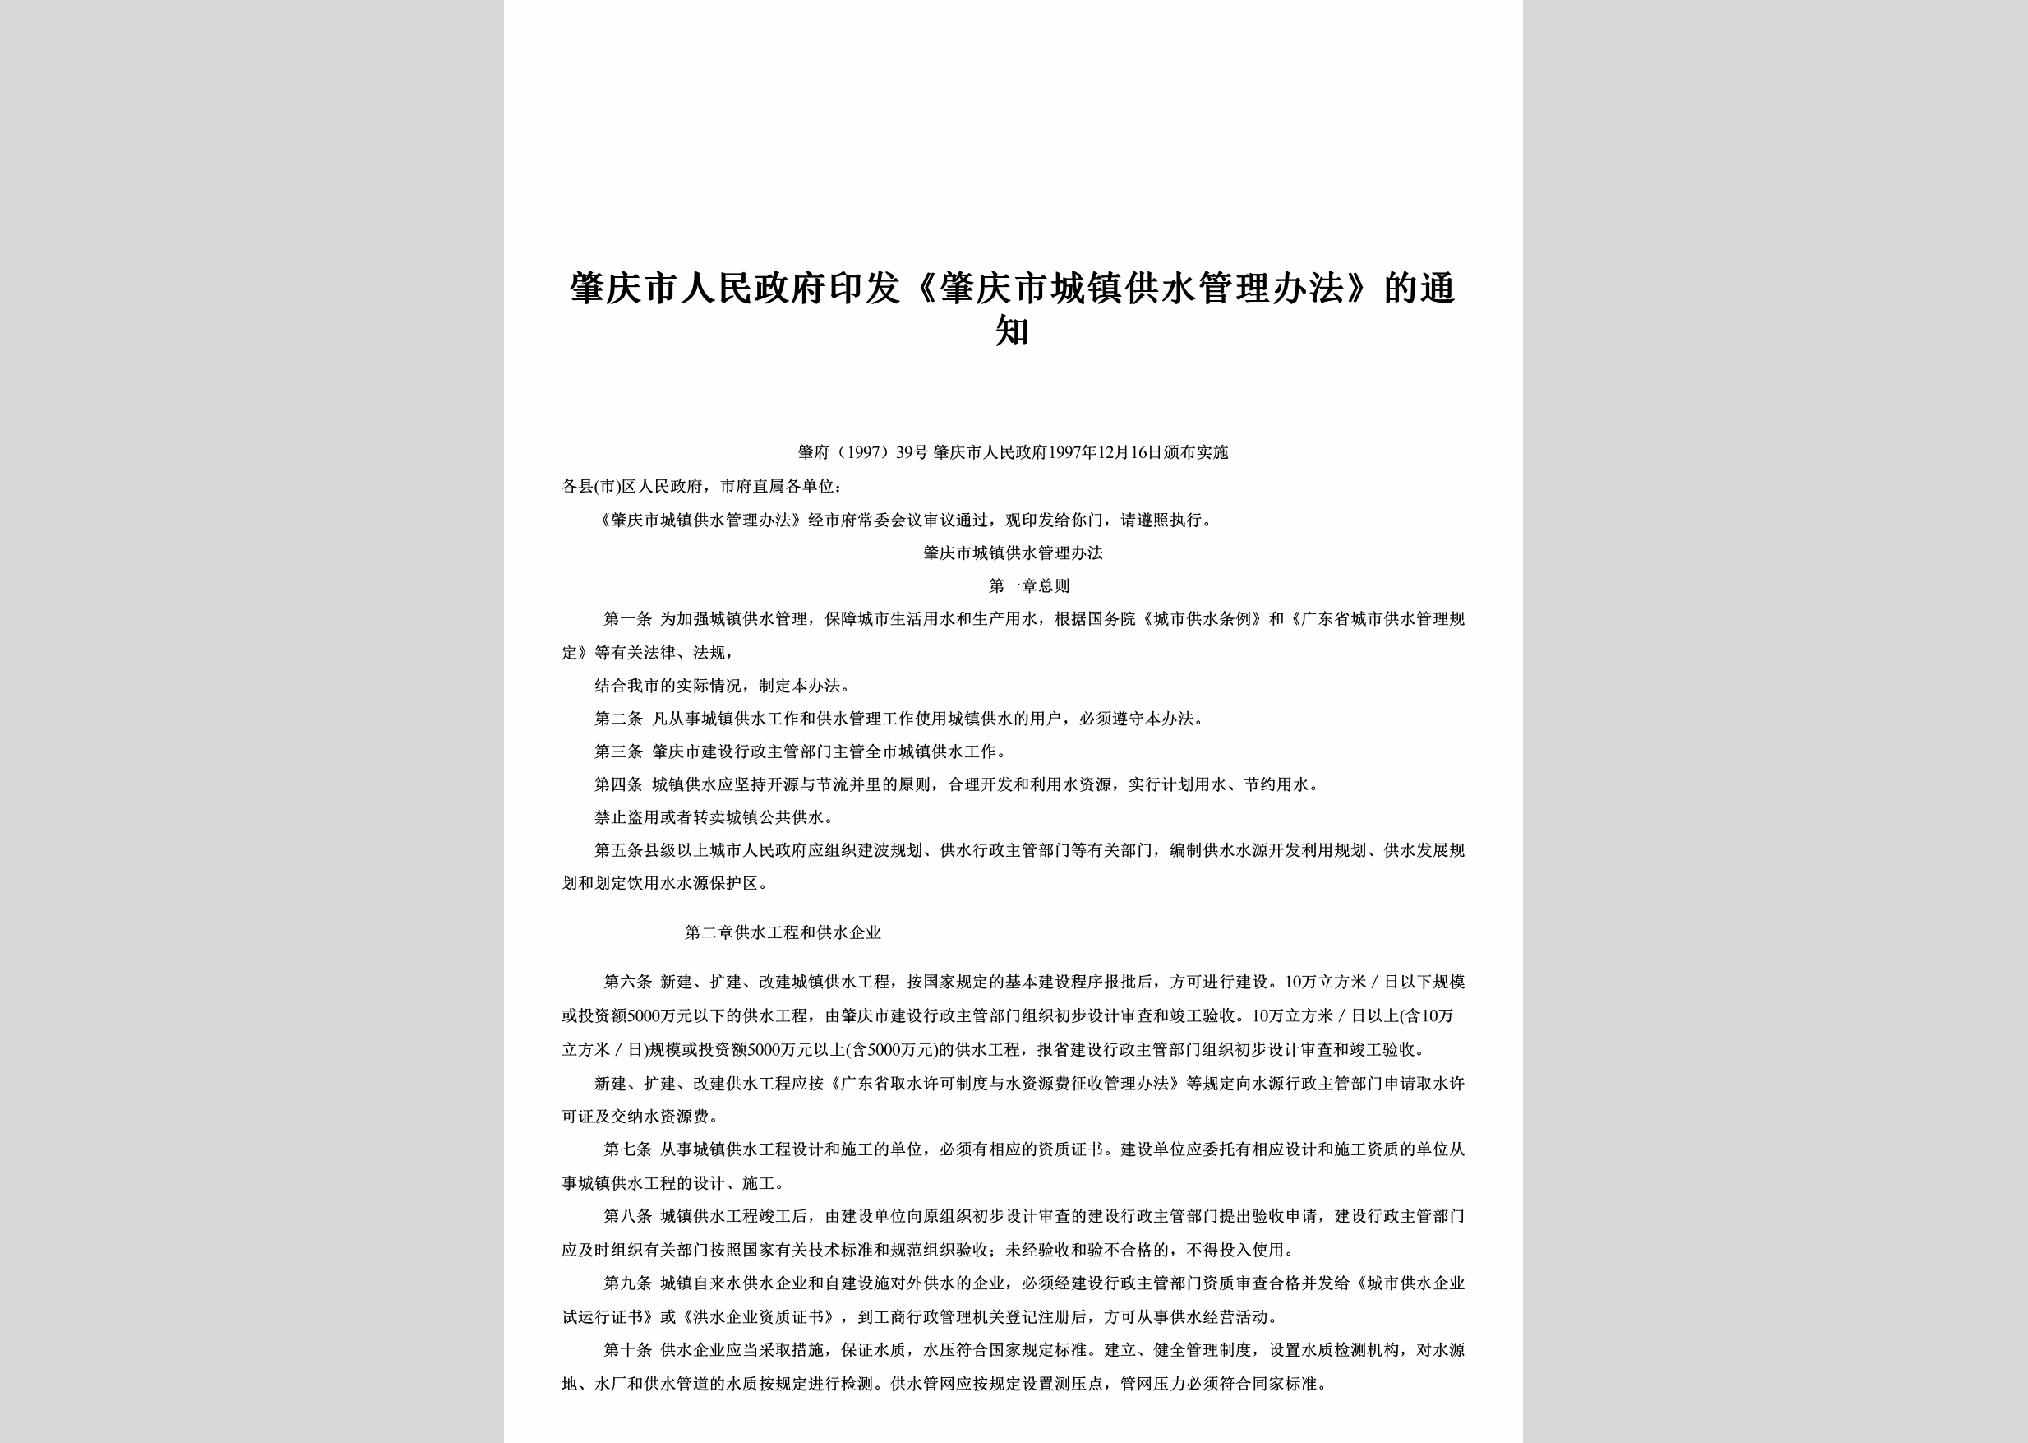 肇府[1997]39号：印发《肇庆市城镇供水管理办法》的通知